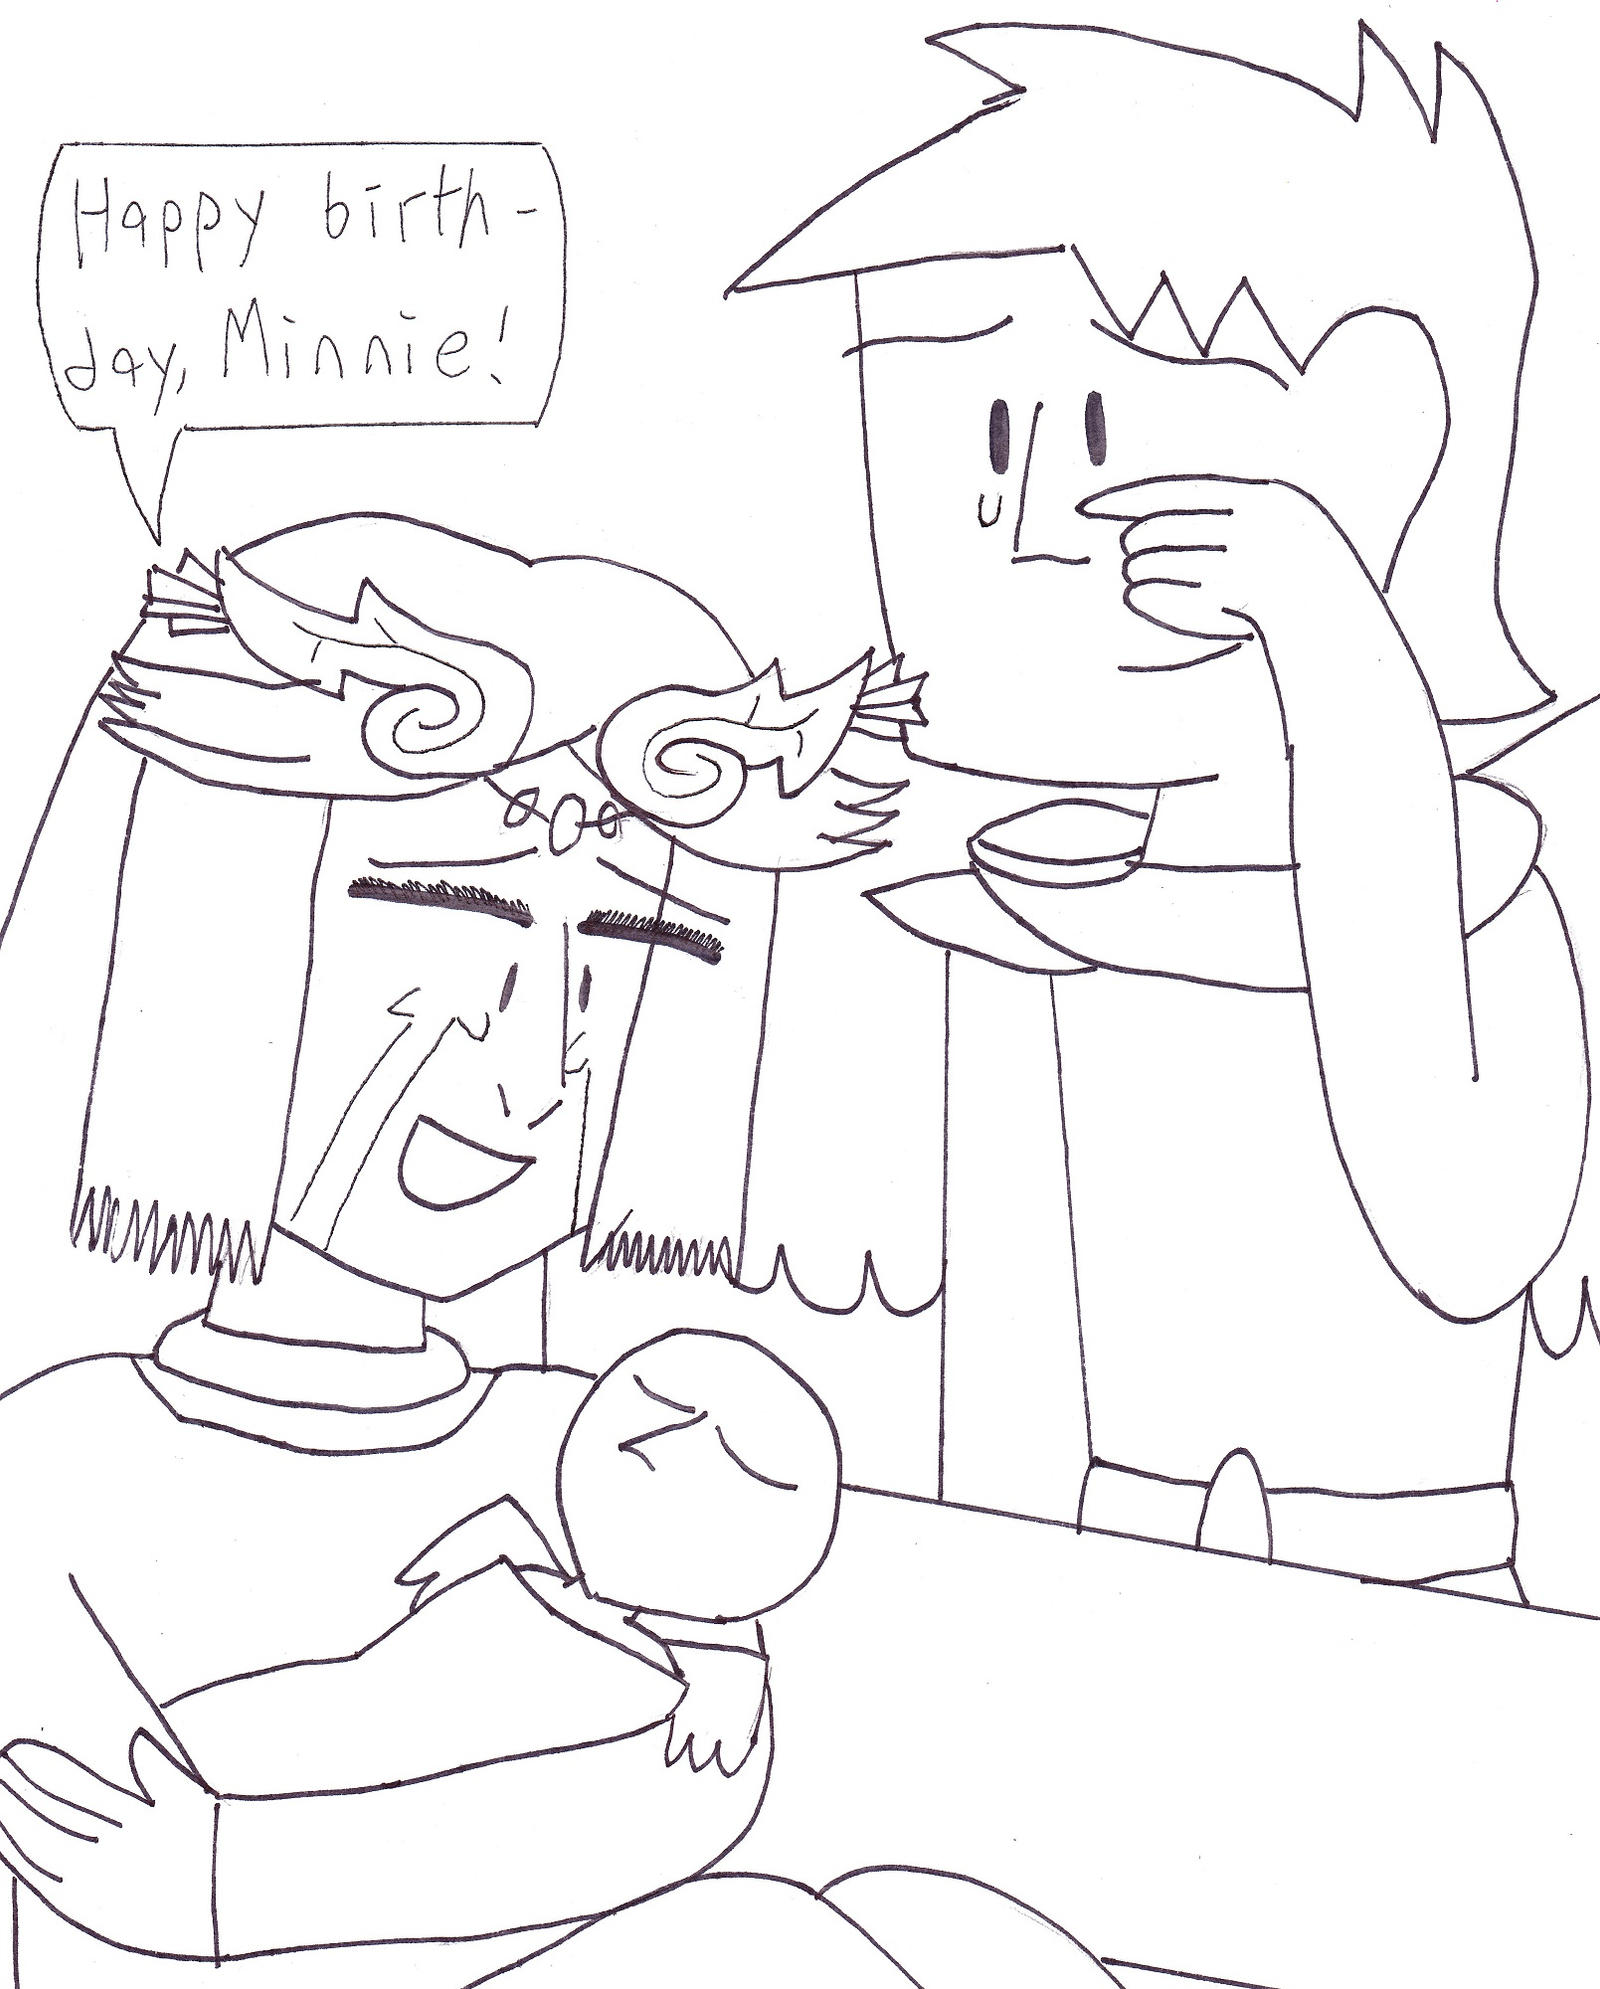 Minnie's Birthday Part 1